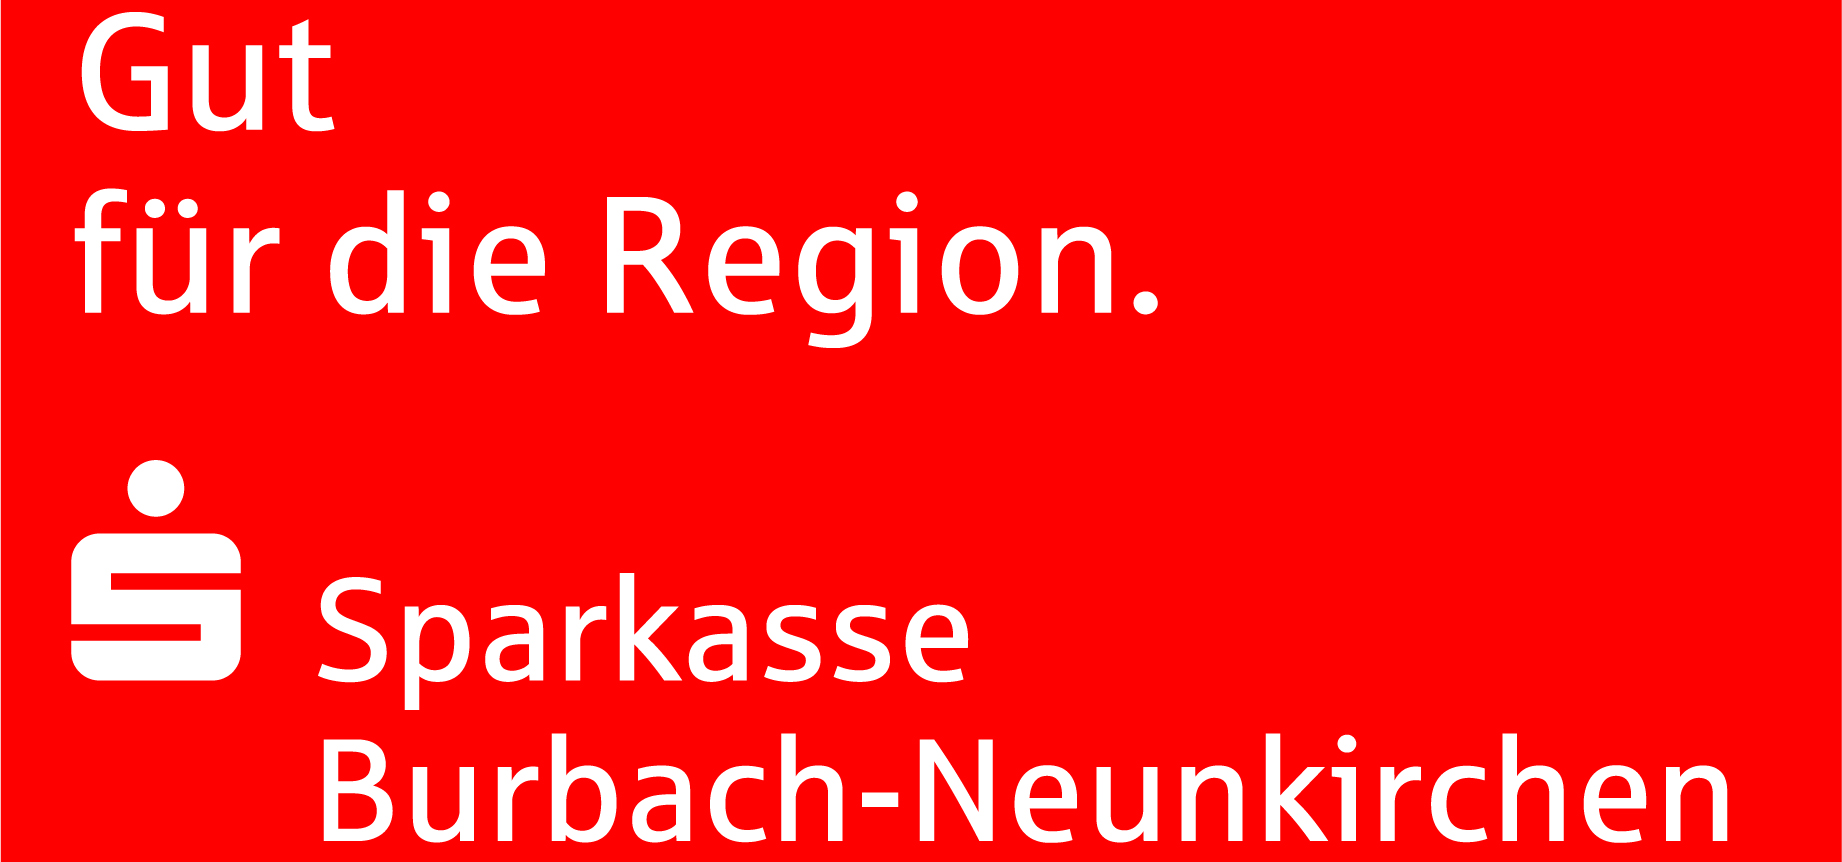 Der Dateiname ist Sparkasse Burbach Neunkirchen